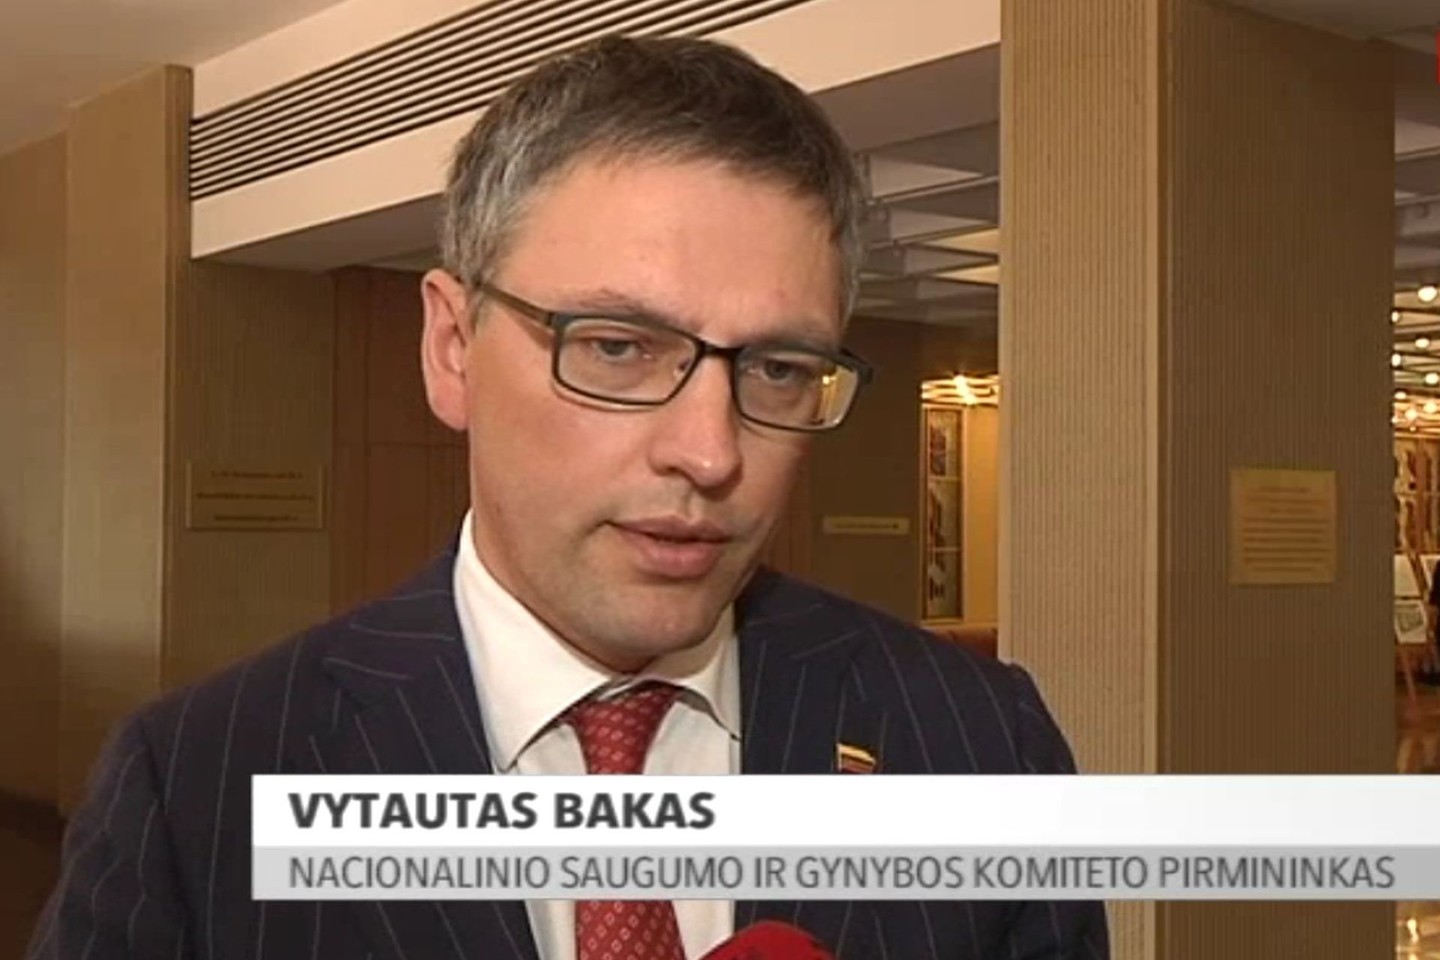 V.Bakas pažymėjo, kad ir anksčiau būta atvejų, kai leidimas gyventi Lietuvoje suteikiamas pavojingiems asmenims.<br>Stop kadras